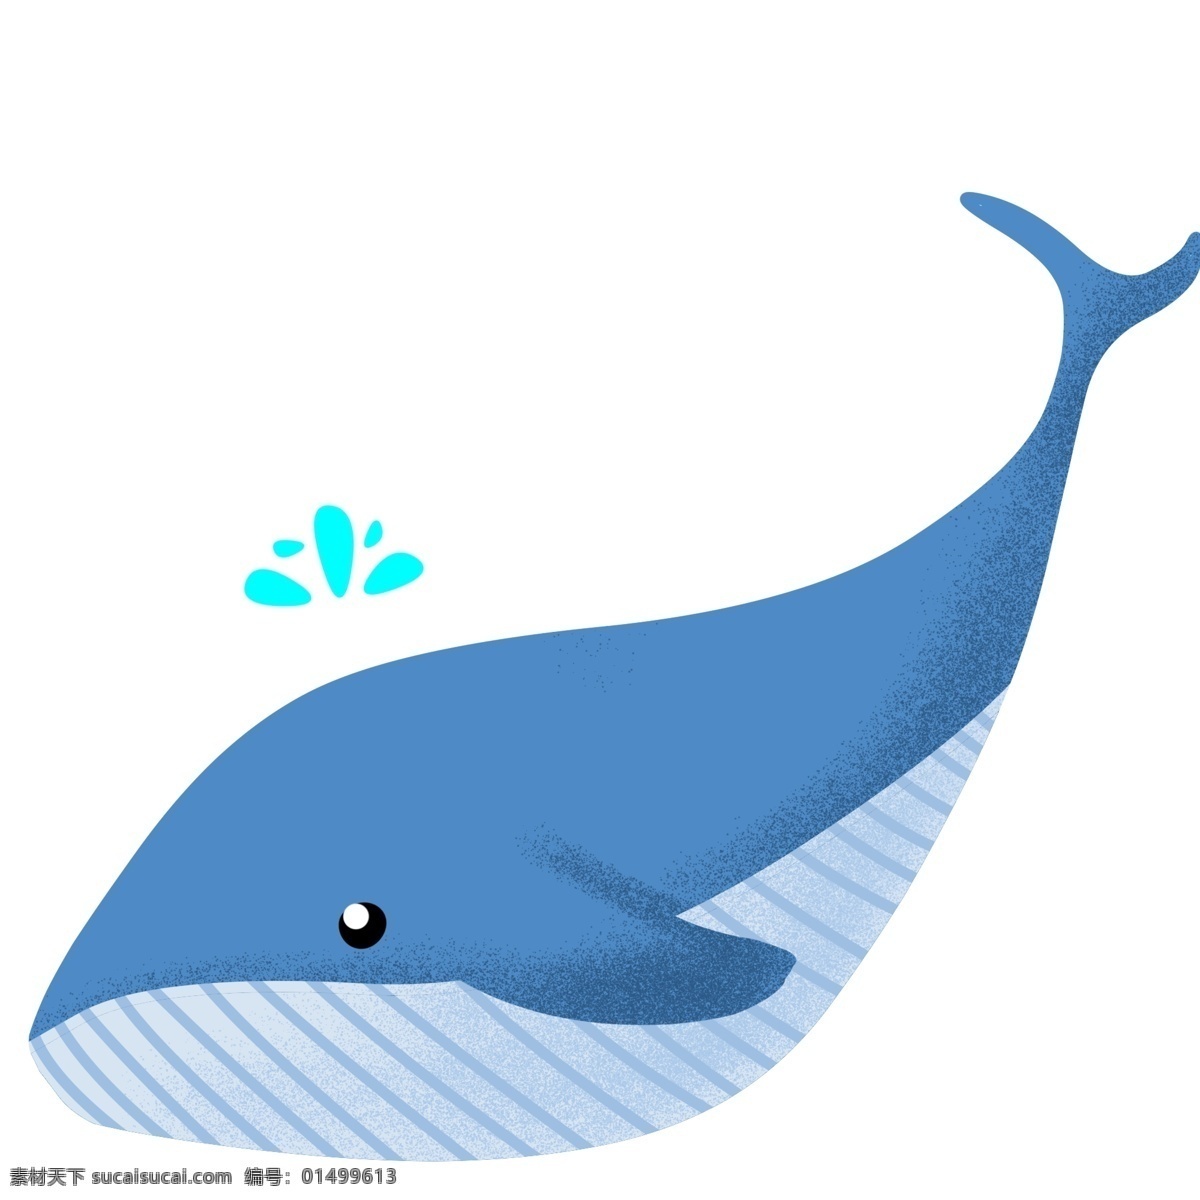 蓝色 大 鲸鱼 插画 动物 海洋 海水 水中 卡通 蓝鲸插画 大鲸鱼 蓝色的鱼 喷口水 水生 可爱鲸鱼 手绘